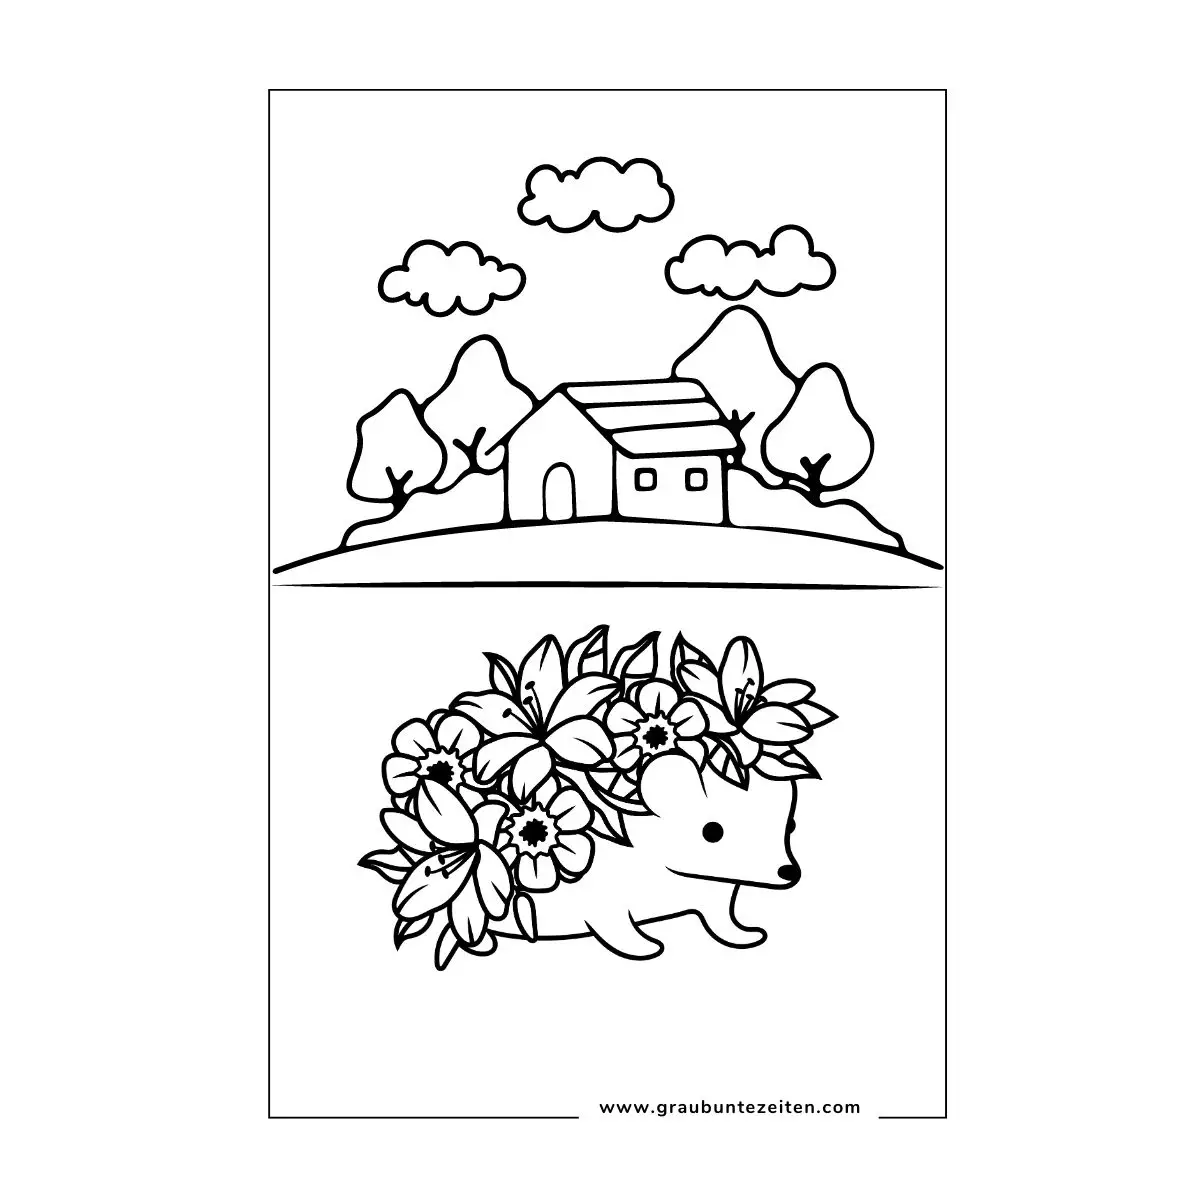 Ein kleiner Igel trägt buntes Herbstlauf auf dem Rücken. Er sitzt vor einem kleinen Haus.